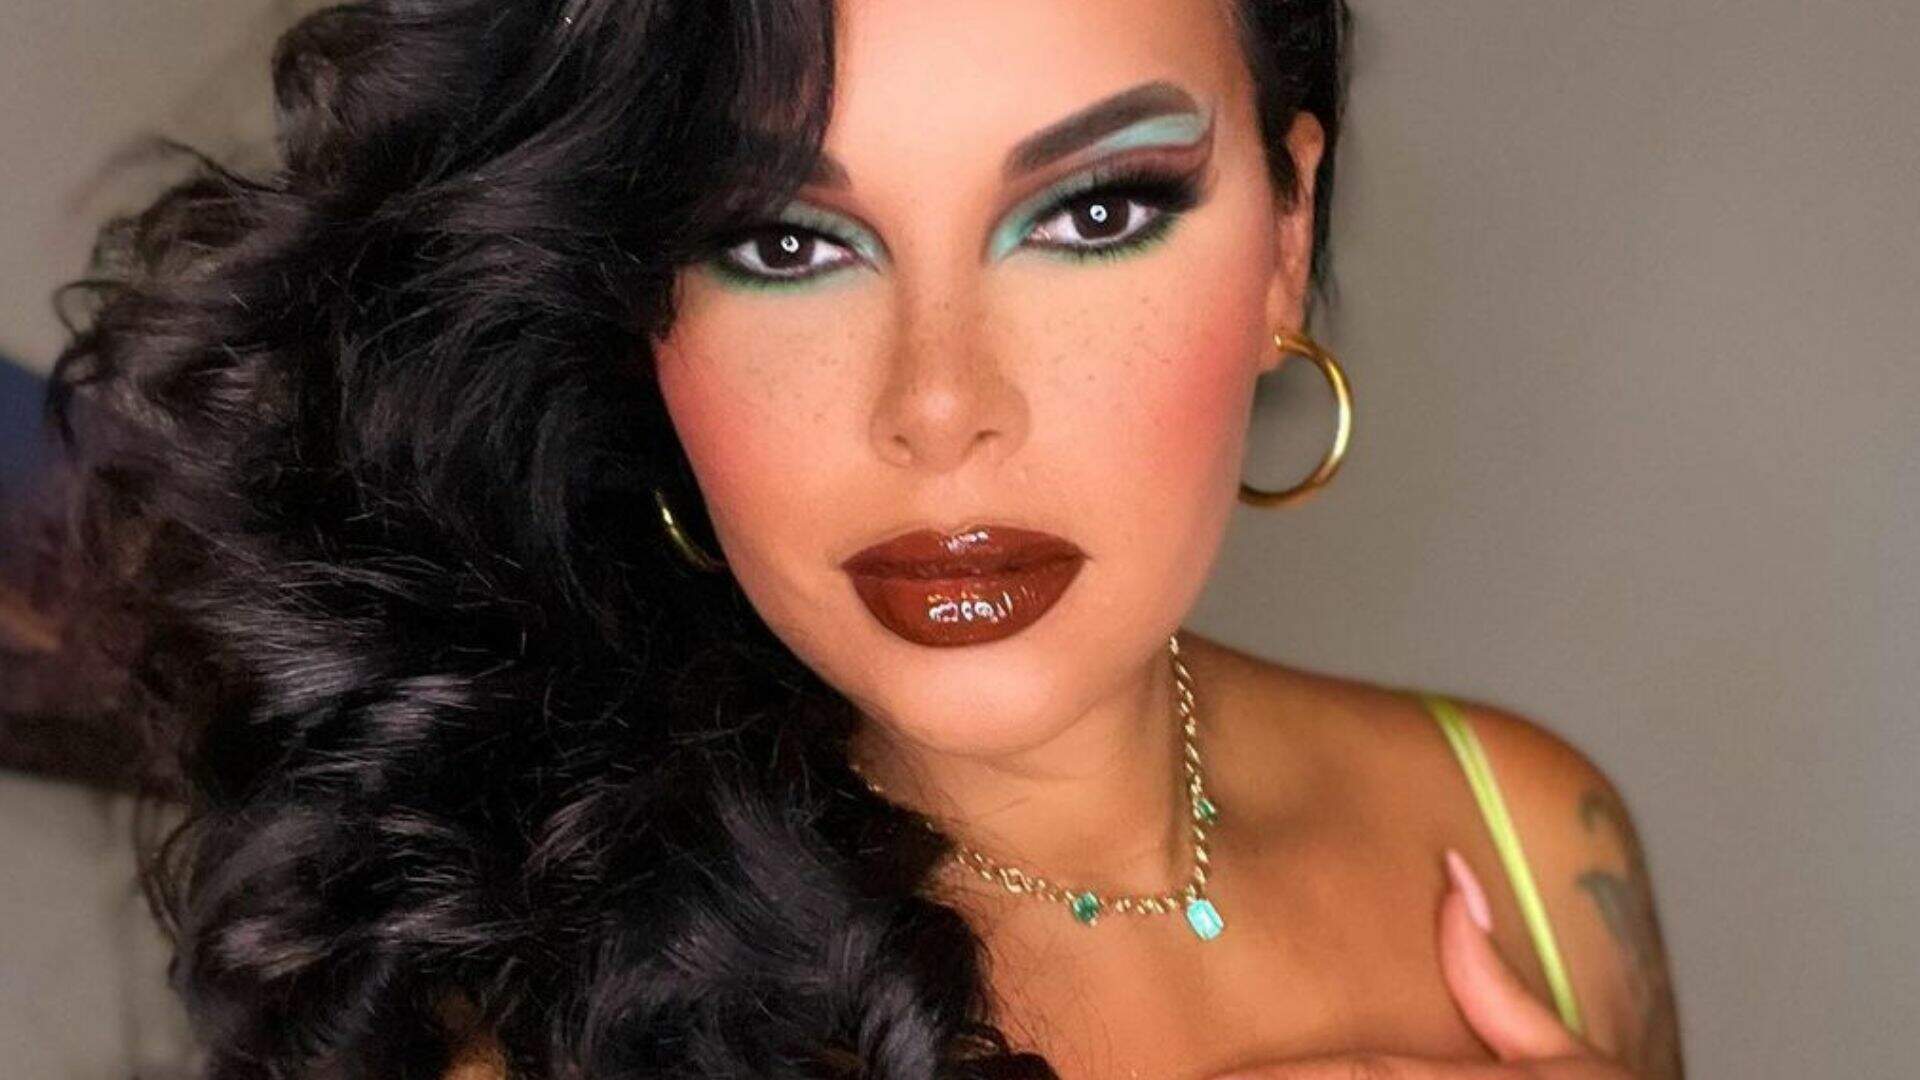 Ex-BBB Ariadna Arantes faz desabafo sobre ser ignorada pelas marcas de maquiagem: “Bate um desânimo” - Metropolitana FM